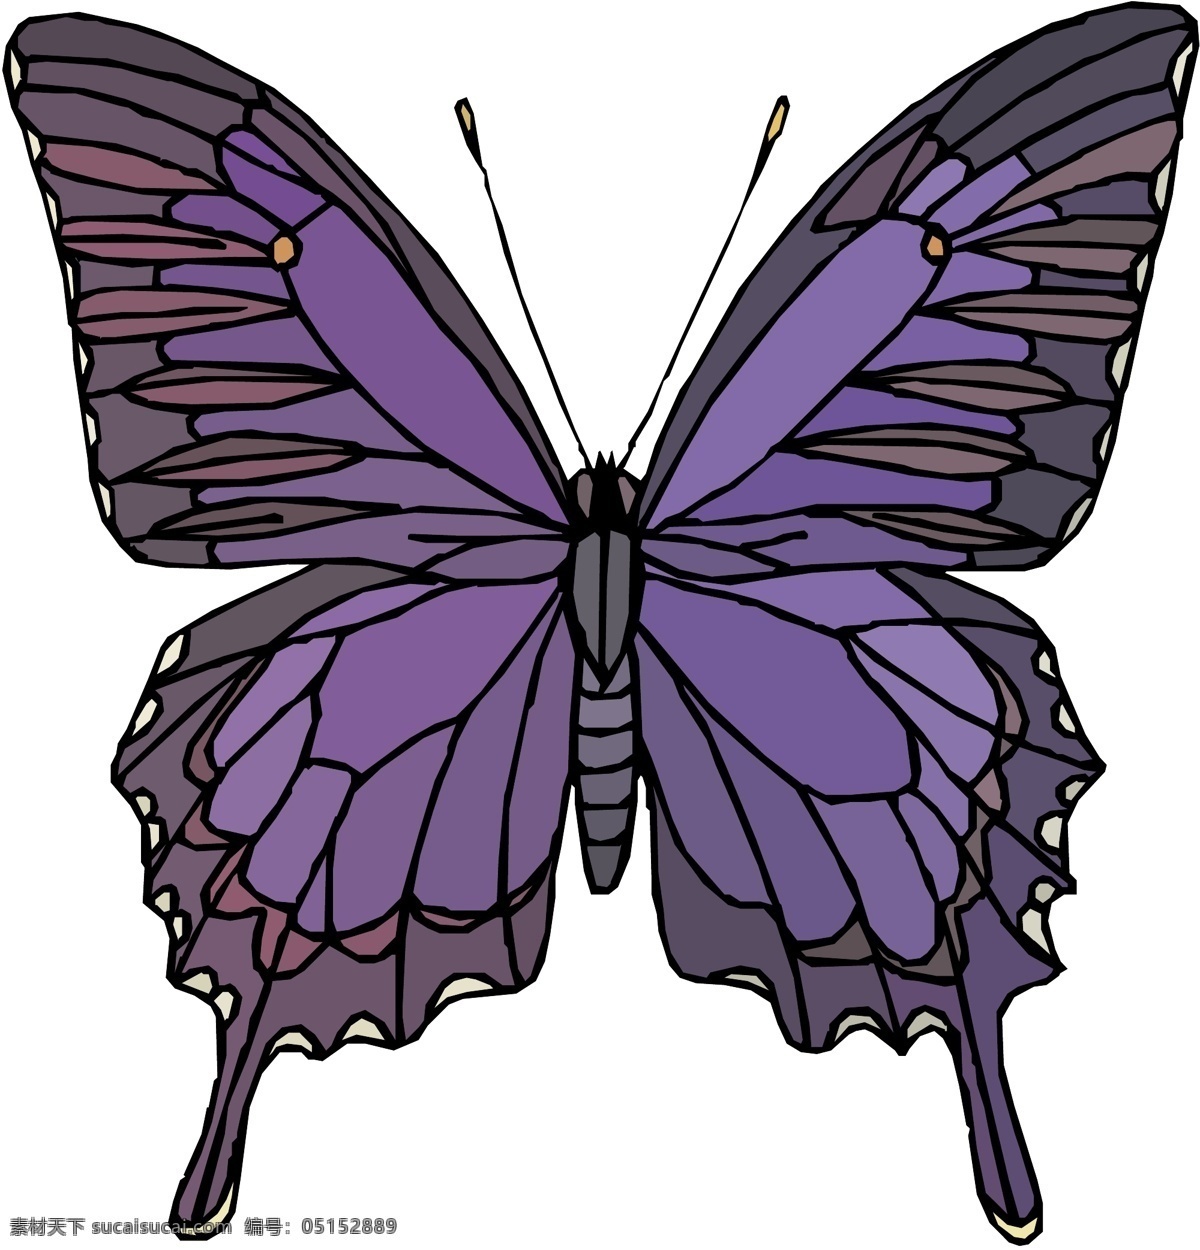 五彩蝴蝶 矢量素材 格式 eps格式 设计素材 昆虫世界 矢量动物 矢量图库 白色